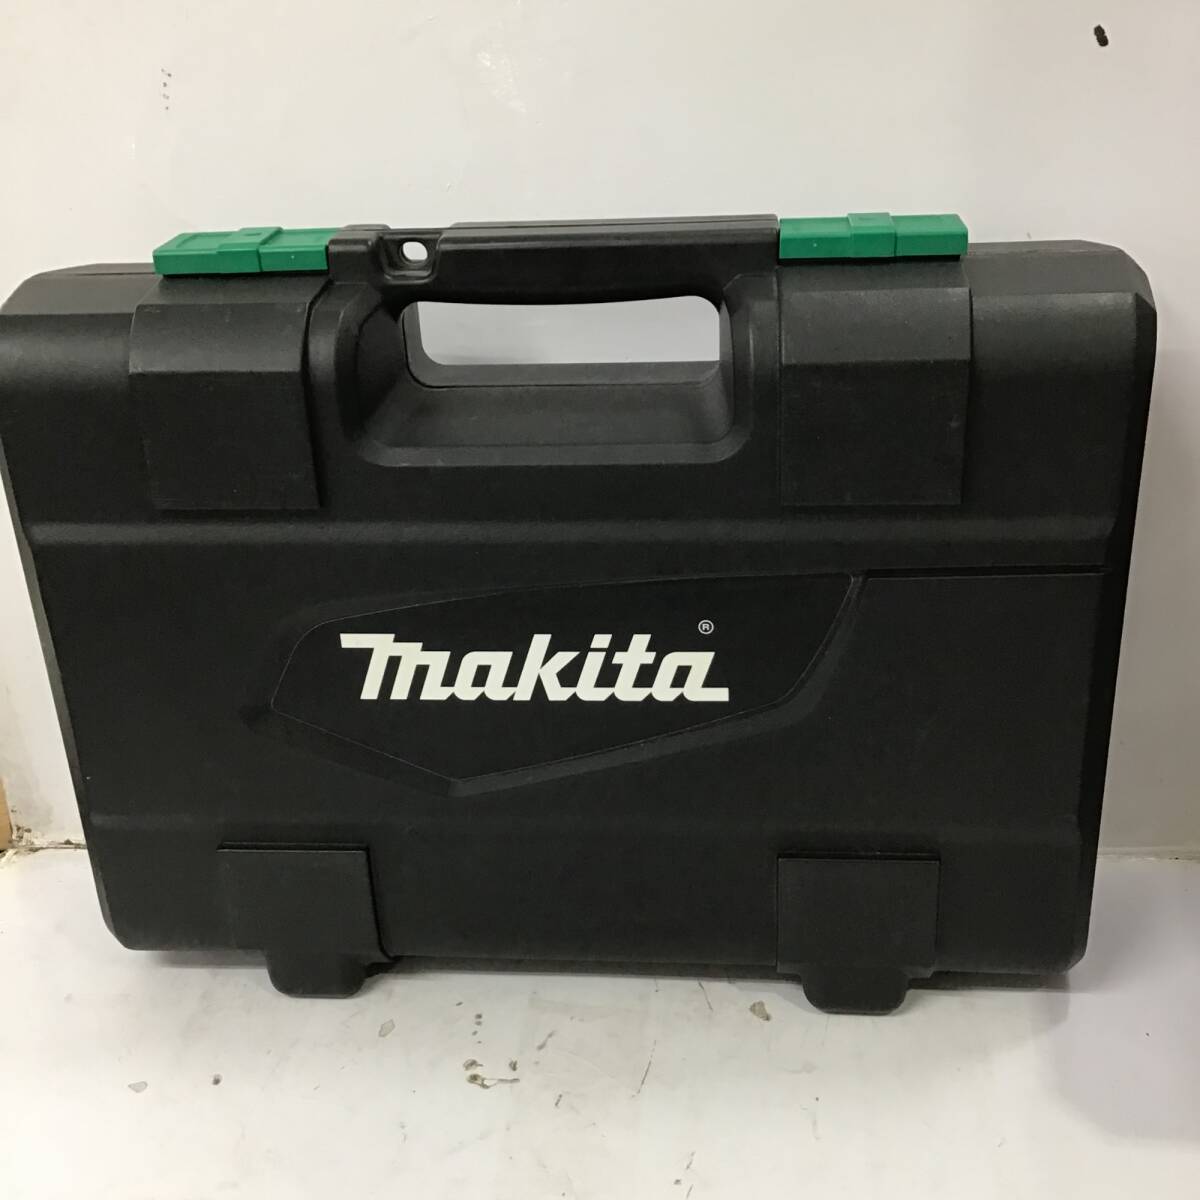 [ secondhand goods ]* Makita (makita) cordless impact driver MTD002DSX